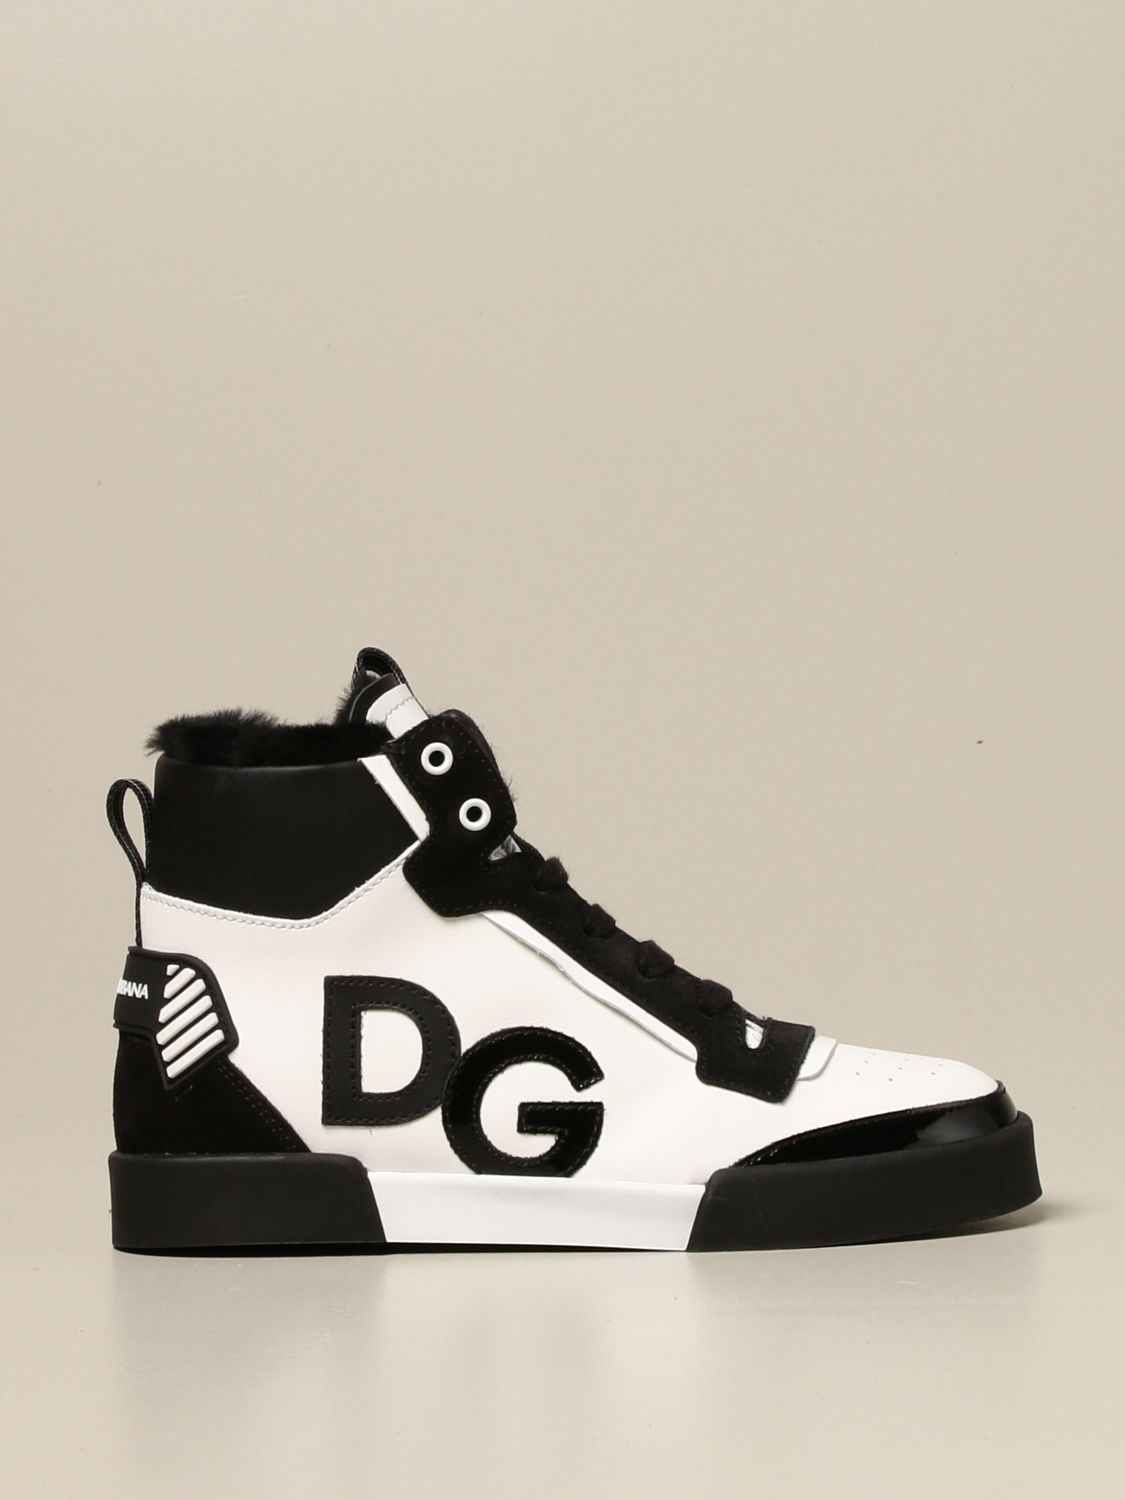 dg kids shoes